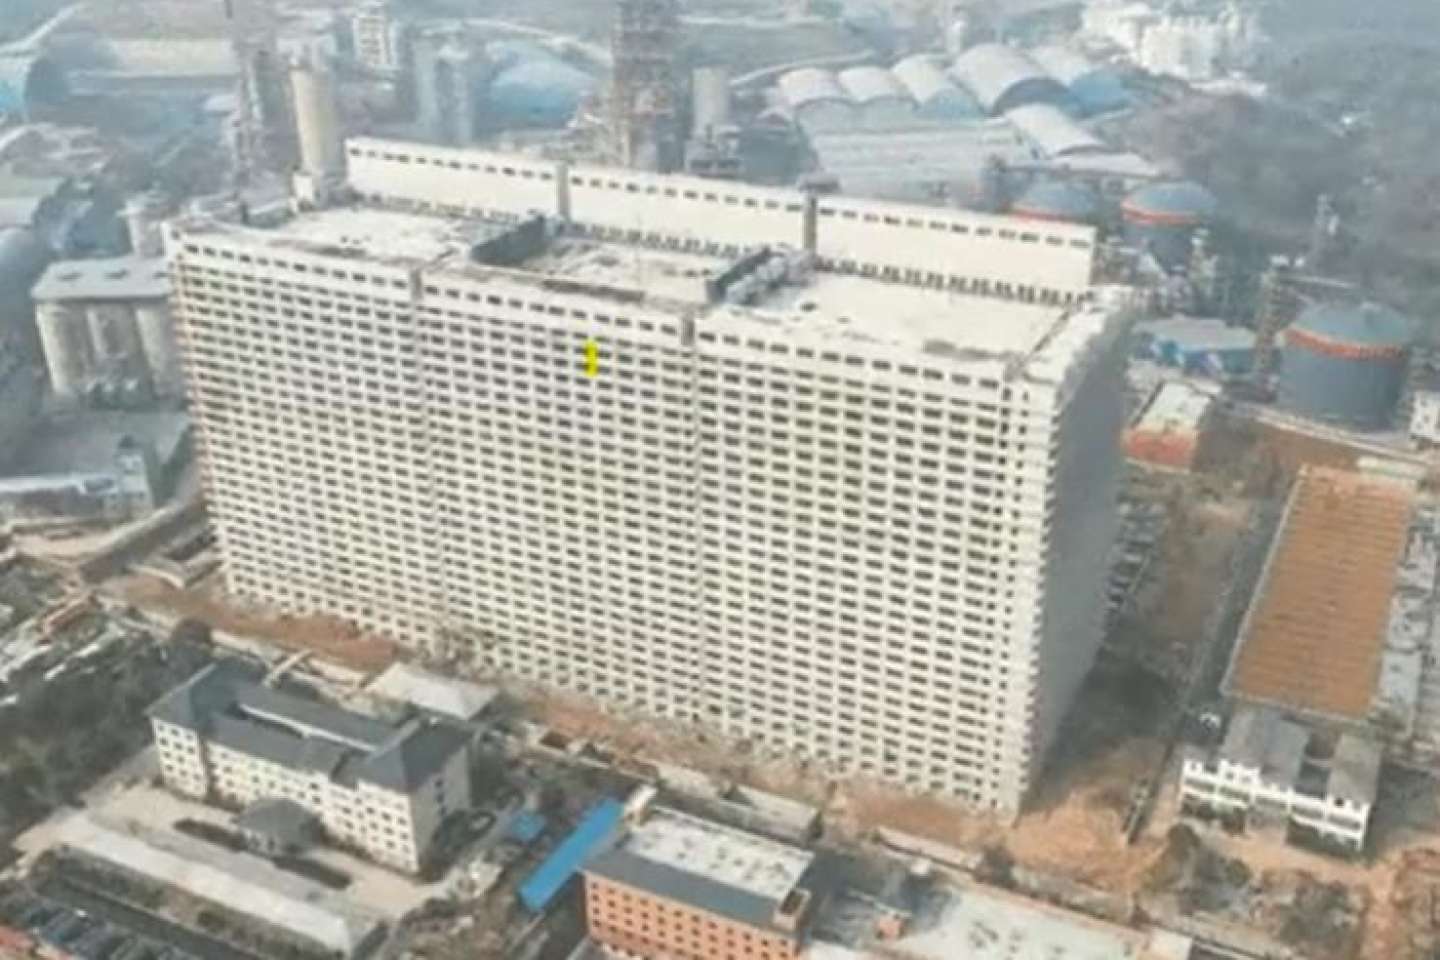 En Chine, une nouvelle méga-porcherie verticale de vingt-six étages ouvre dans la province du Hubei